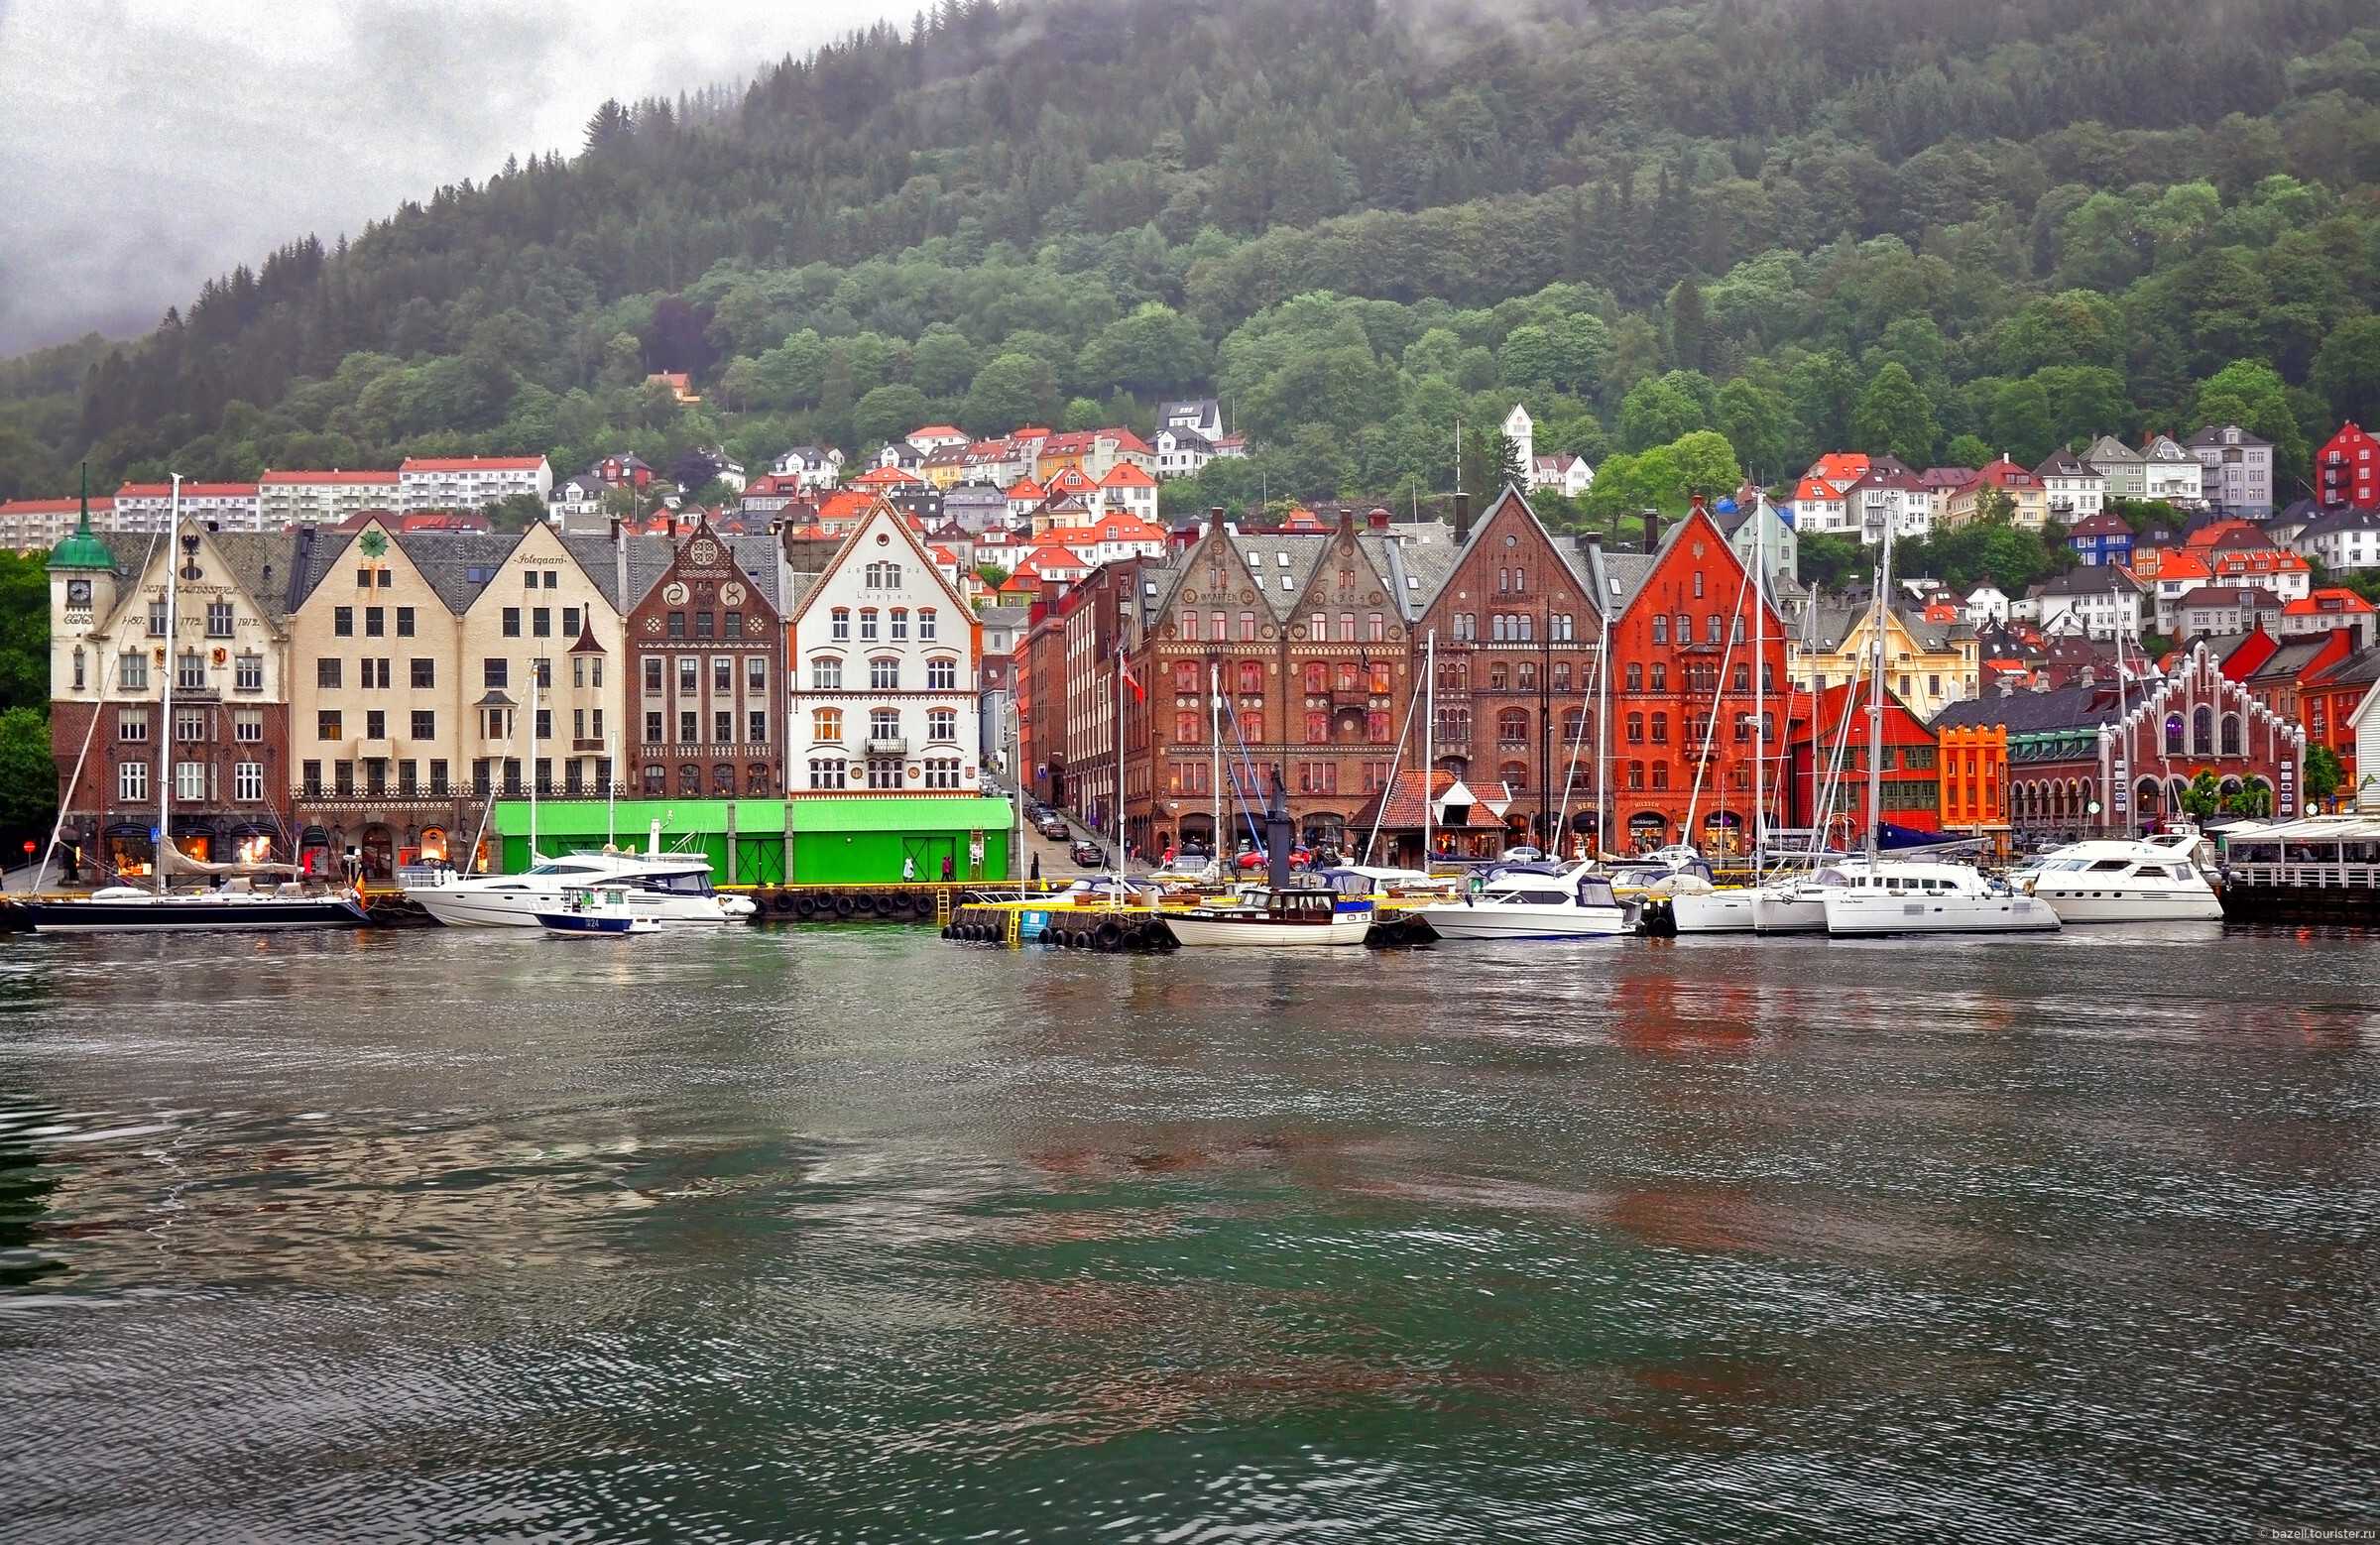 Берген ℹ️ достопримечательности города с описанием и фото, здание "брюгген", горы, норвежский лес, второй по величине город норвегии, порт берген, как добраться, отзывы